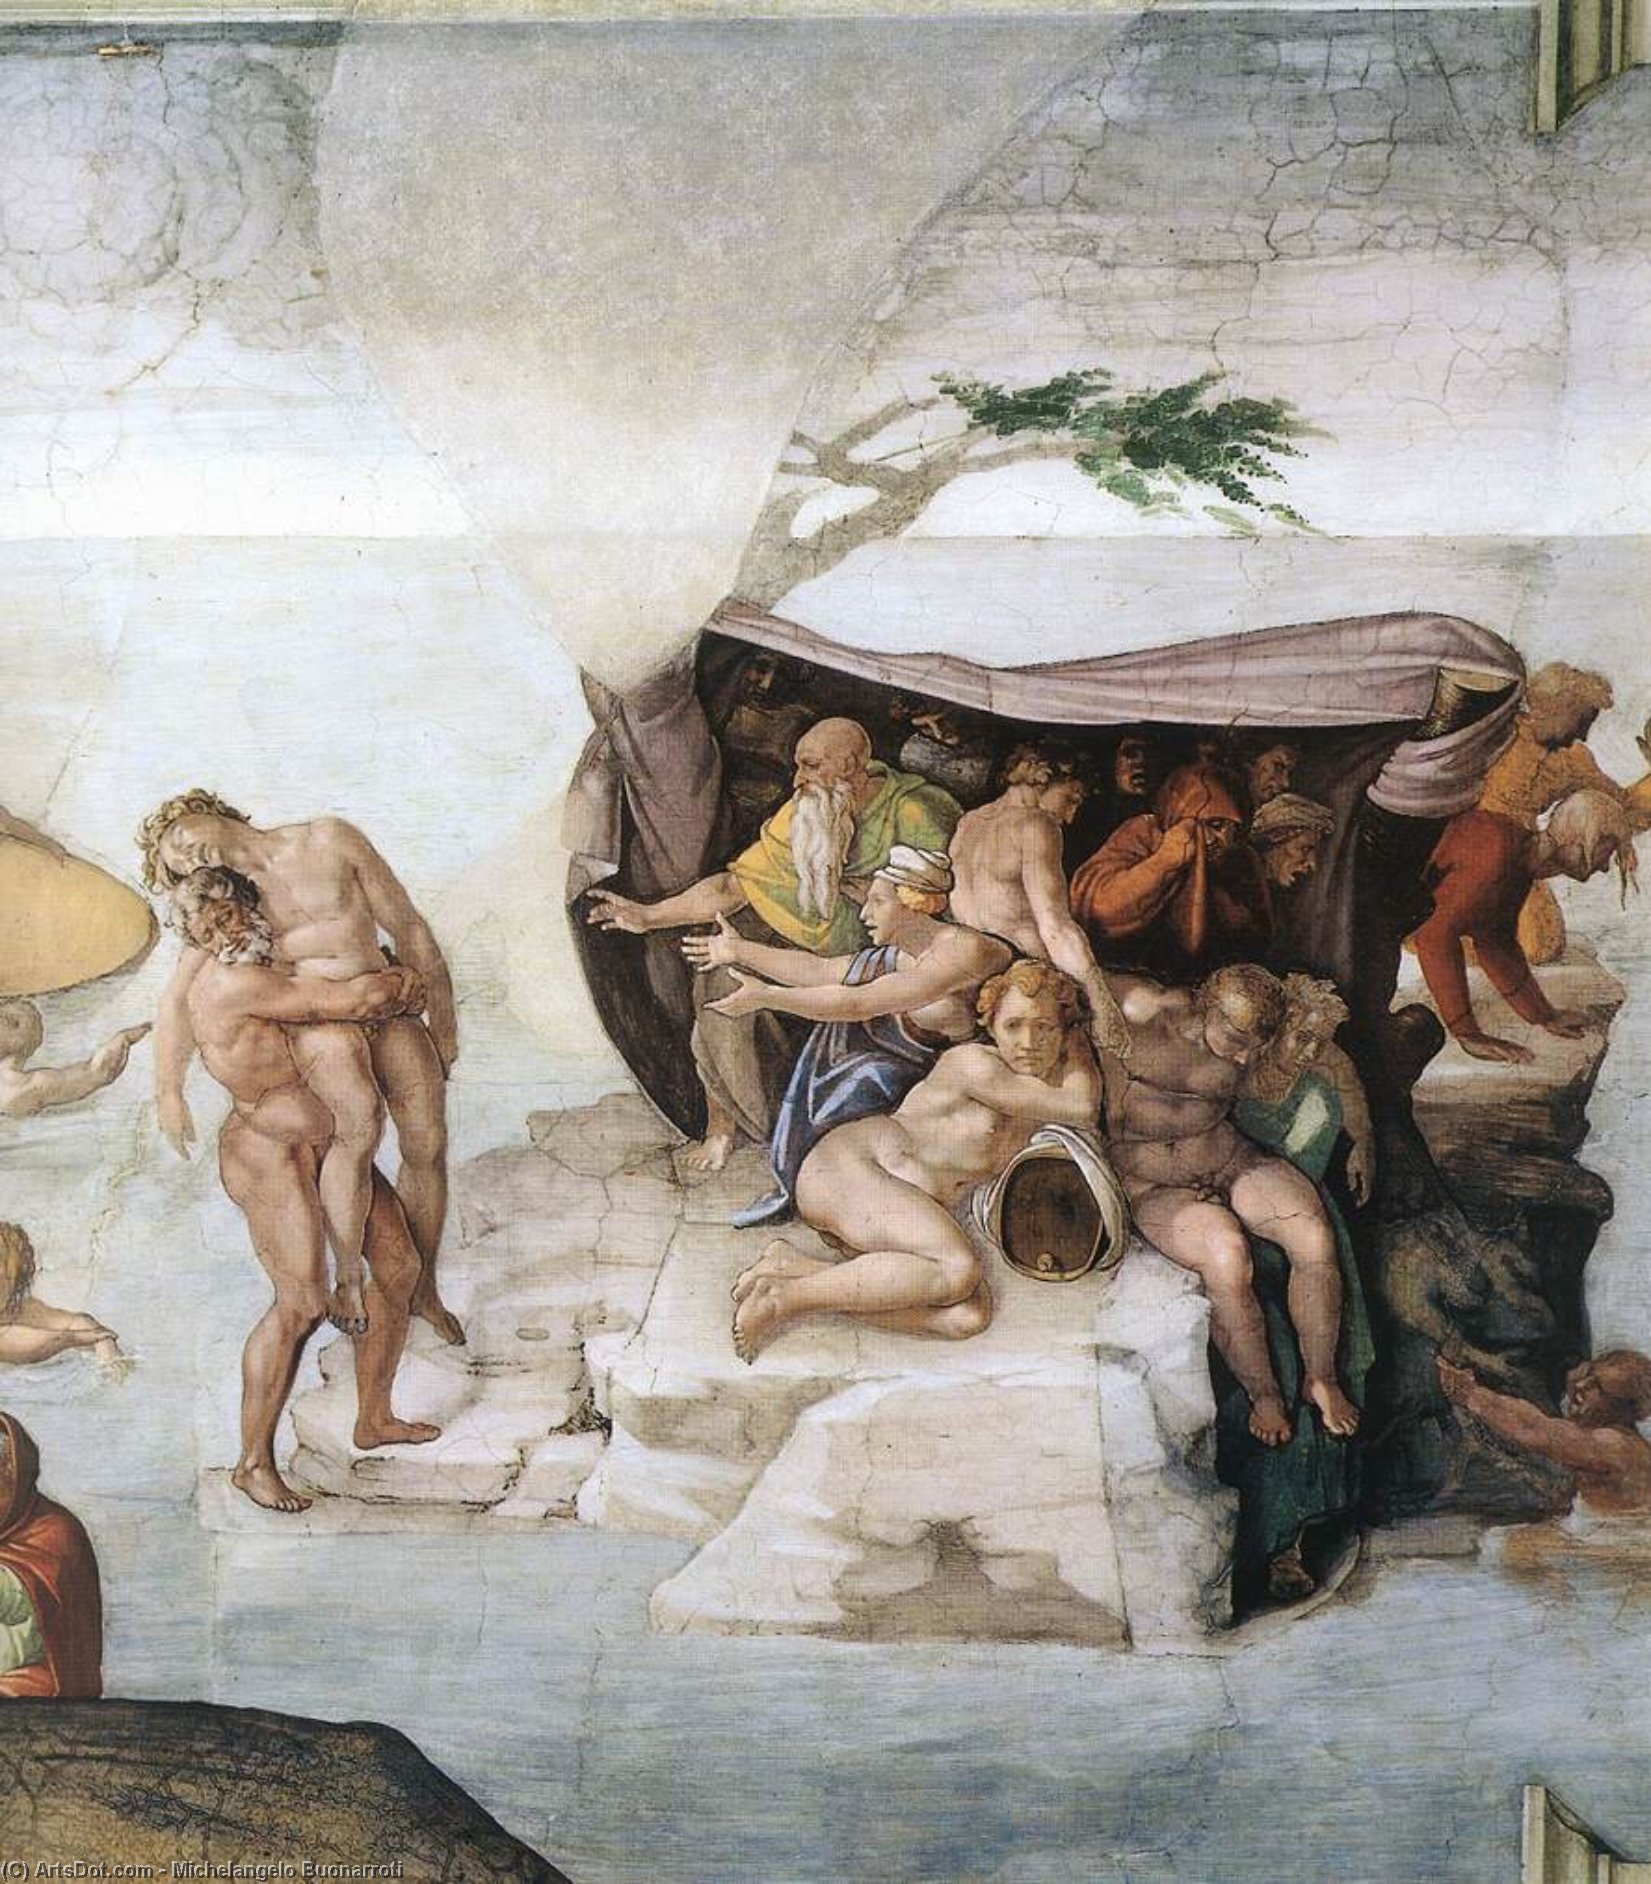 WikiOO.org - Encyclopedia of Fine Arts - Lukisan, Artwork Michelangelo Buonarroti - The Deluge (detail)